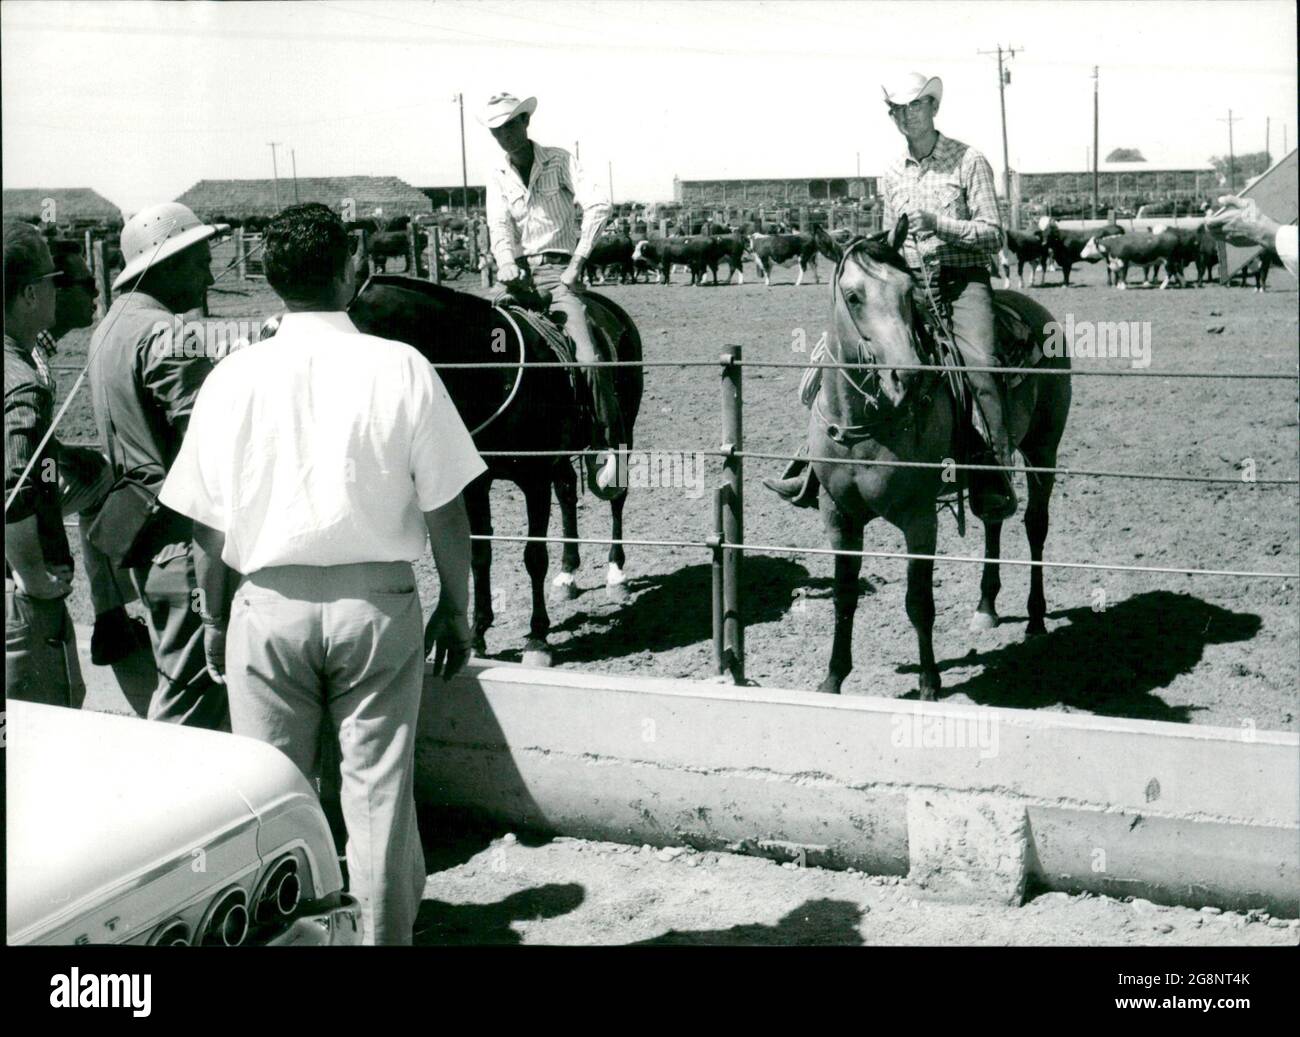 Foto zur NDR-Sendung "Das andere Amerika" von Werner Baecker ausgestrahlt am 23. Oktober 1964 im Deutschen Fernsehen. Das NDR-Kamerateam bei Aufnahmen texanischer Cowboys auf einem riesigen Viehverladungsgebiet. Stock Photo